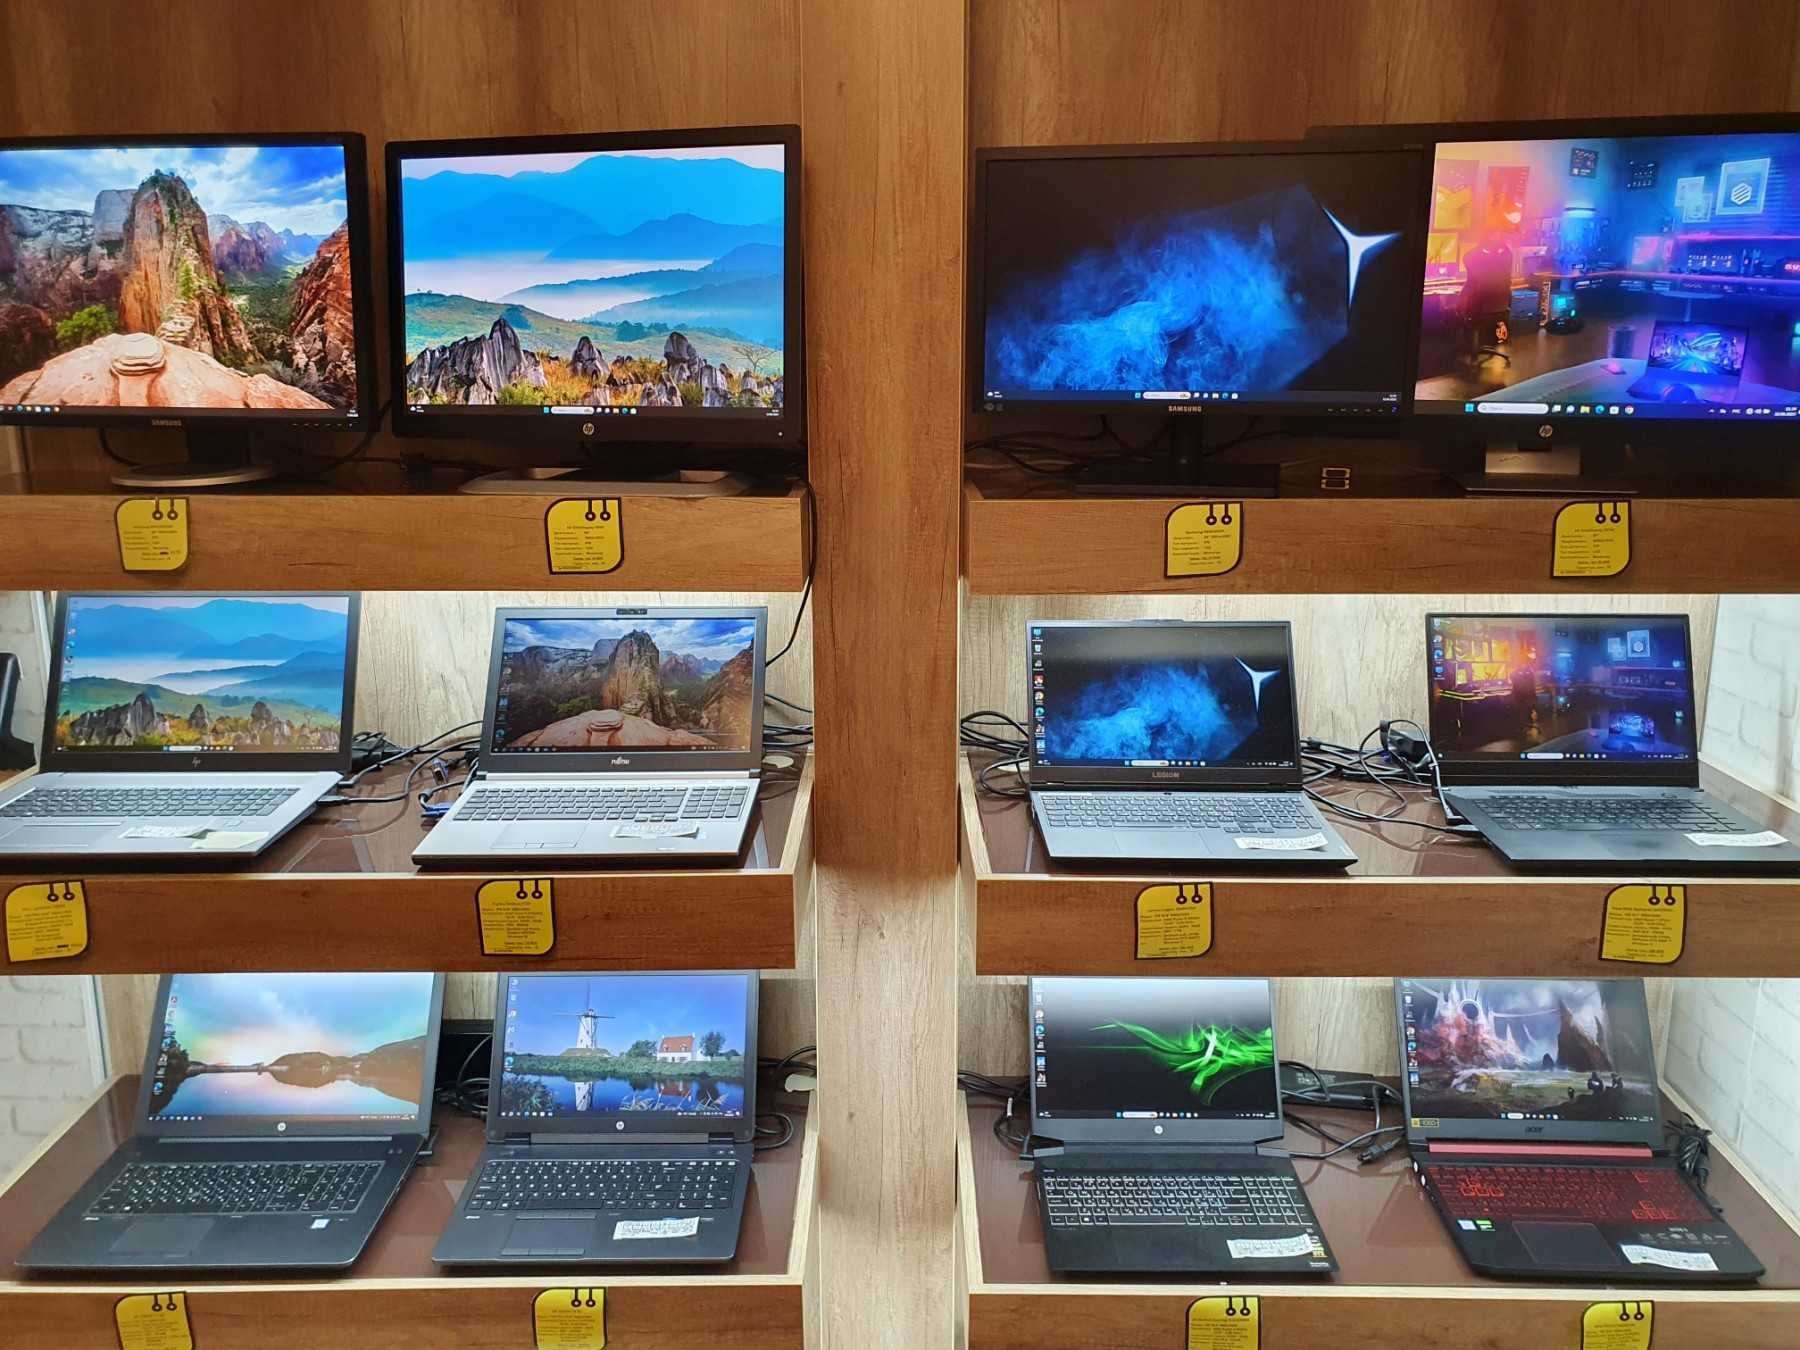 БУ ноутбуки в Днепре: отличное состояние, доступные цены